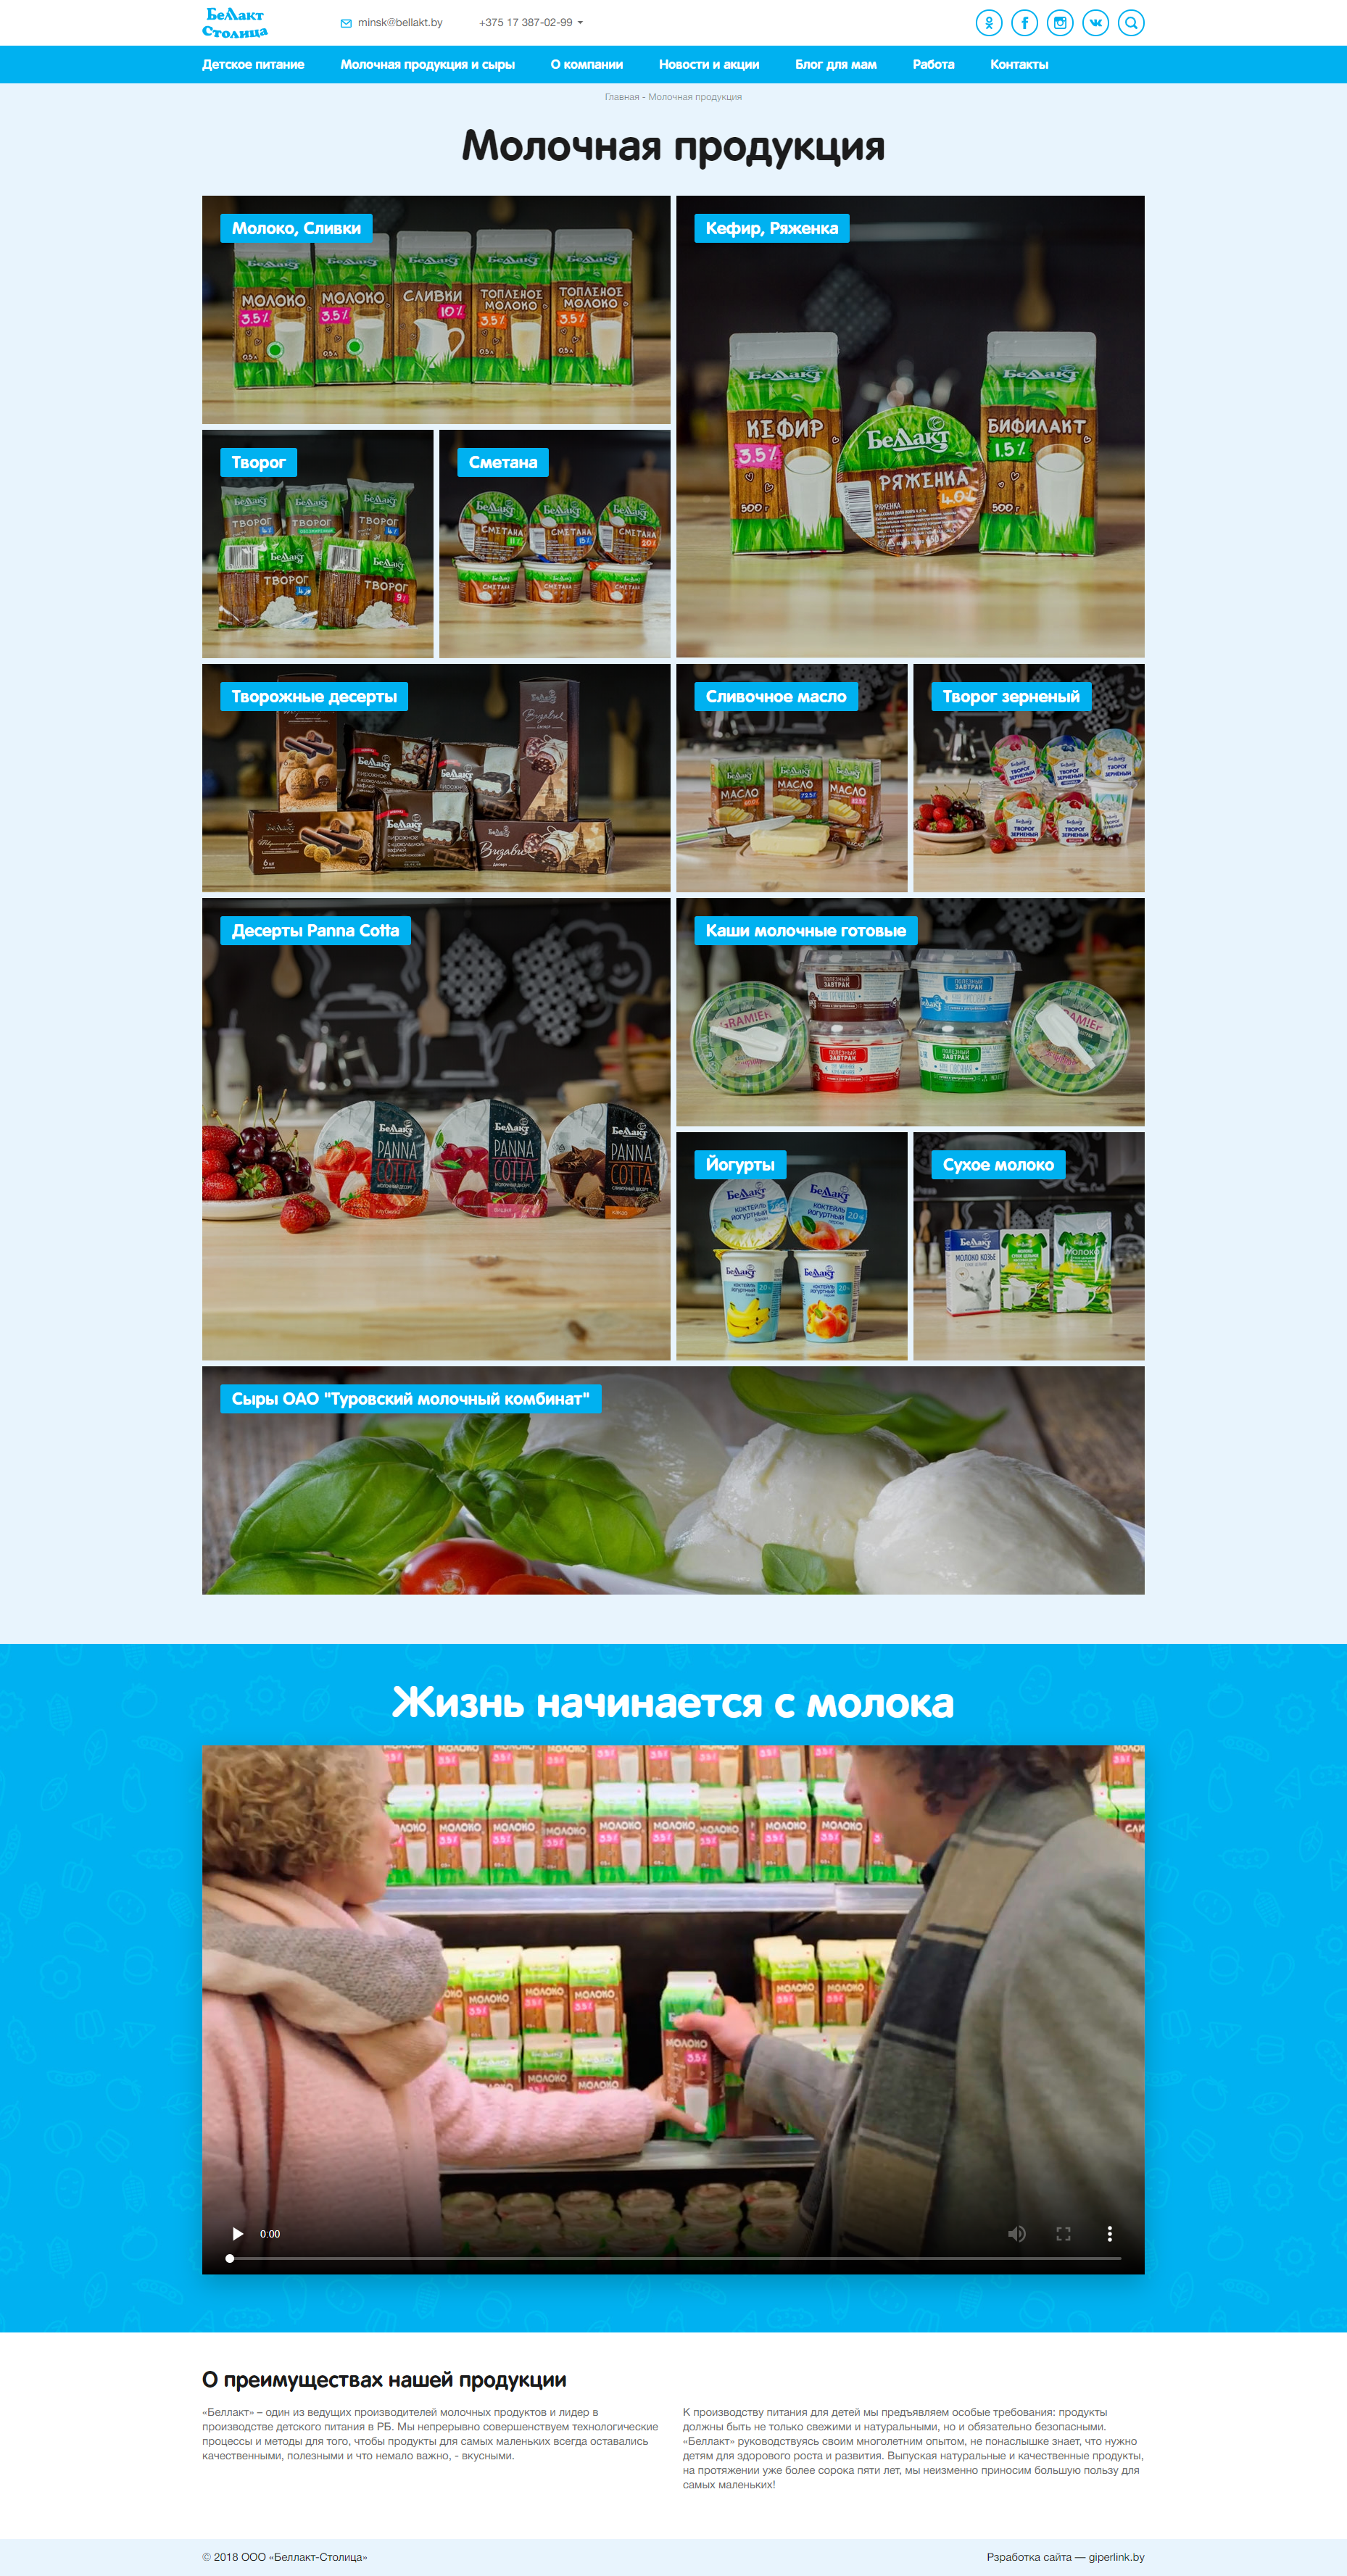 корпоративный сайт с каталогом производителя пюре, соков и морсов для детского питания.